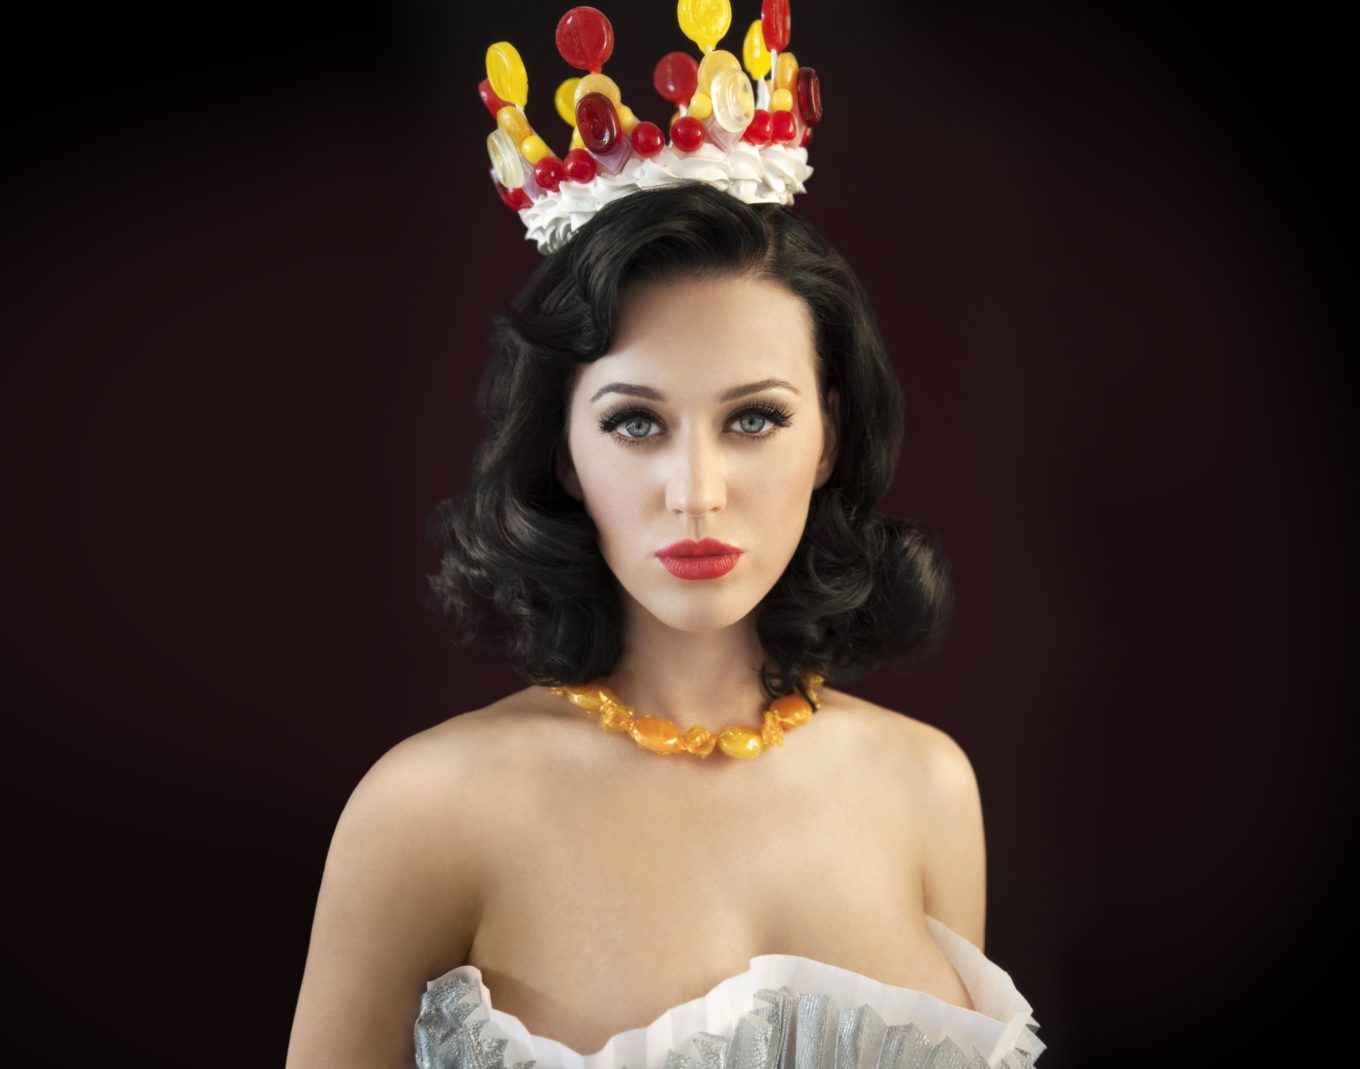 Filtradas En Internet Fotos De Katy Perry Desnuda Filtradas Famosas